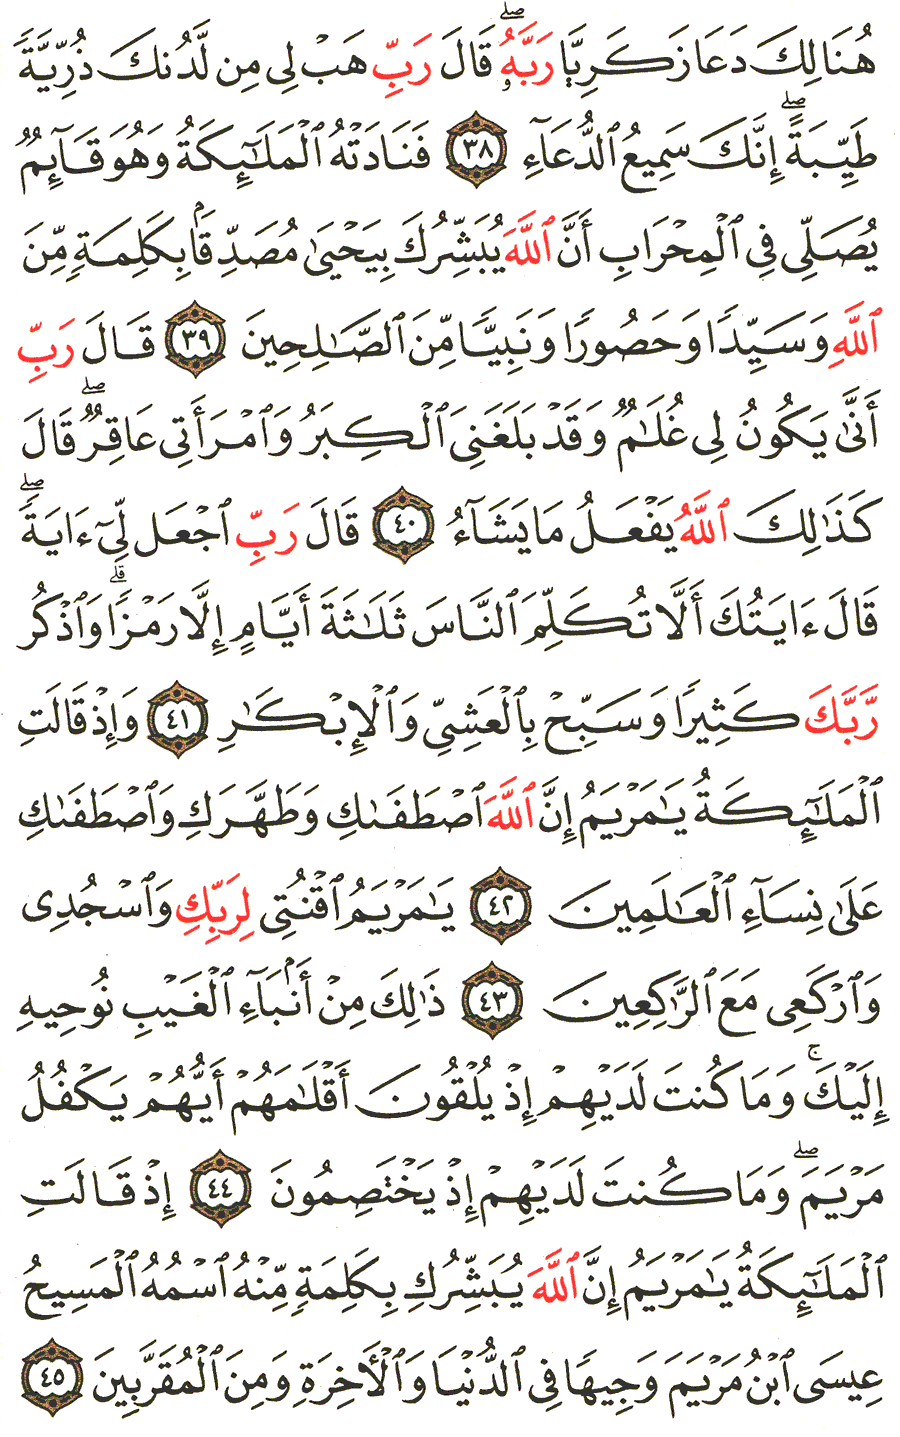 الصفحة 55 من القرآن الكريم